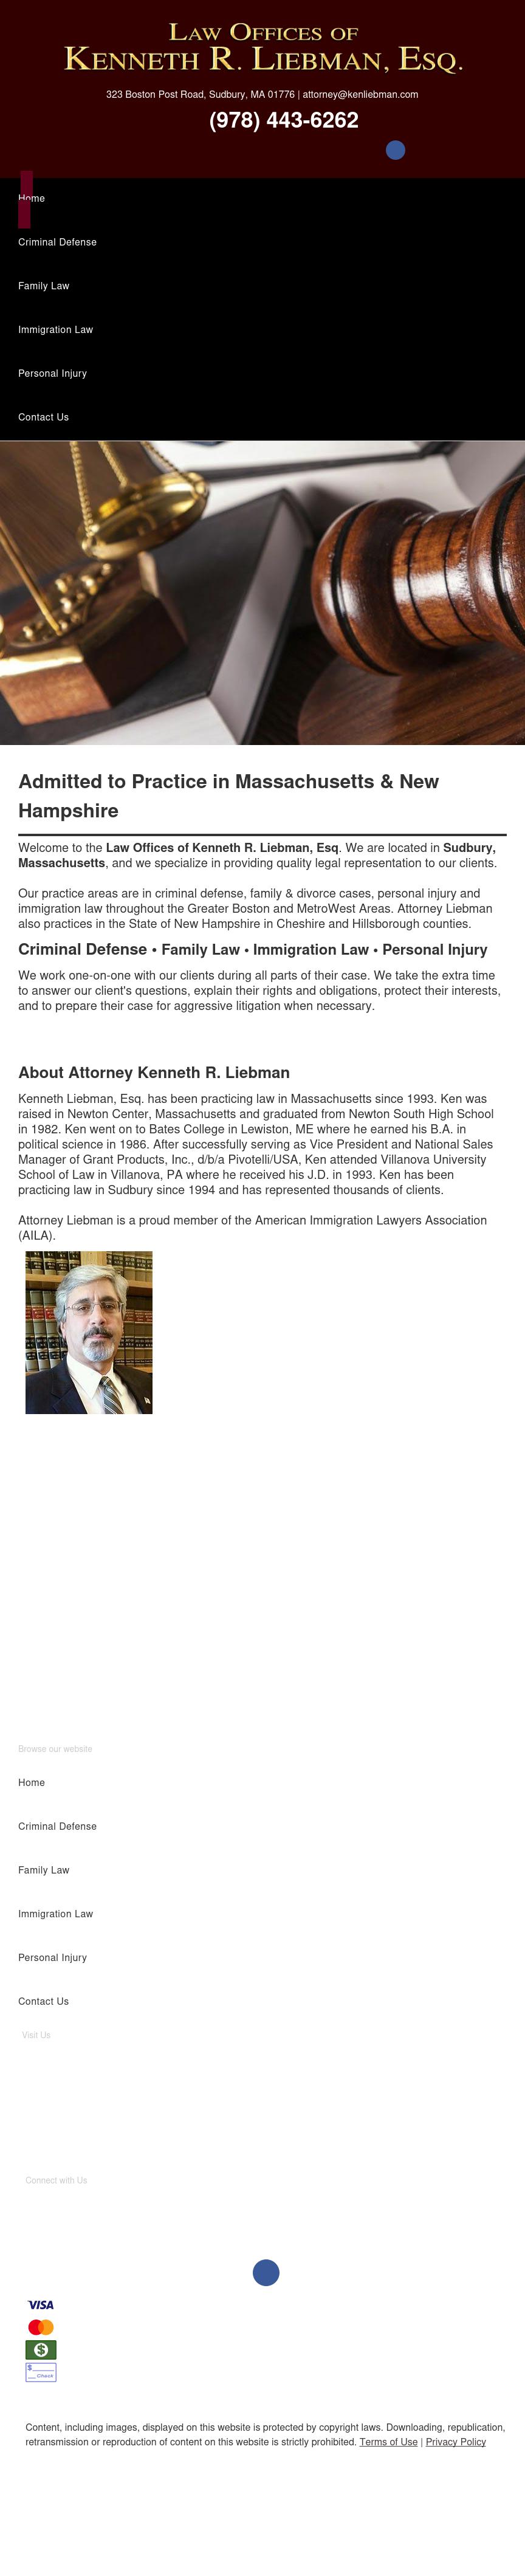 Law Offices of Kenneth R. Liebman, Esq. - Sudbury MA Lawyers